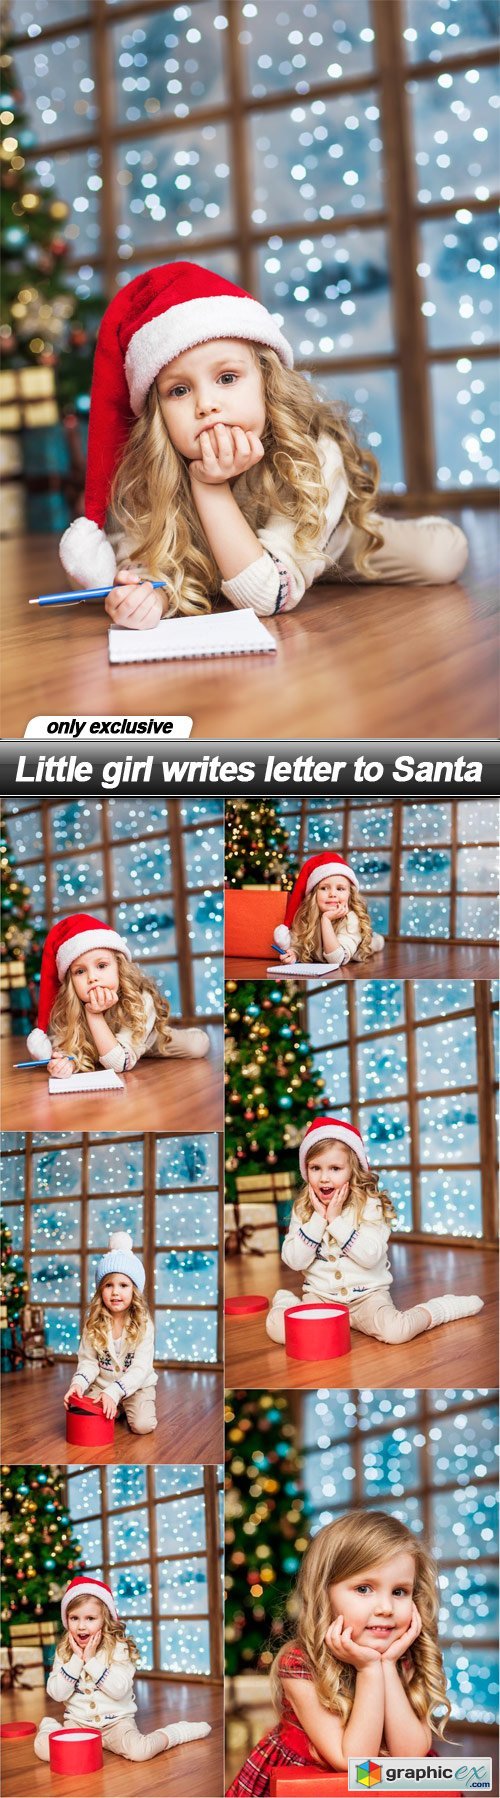 Little girl writes letter to Santa - 6 UHQ JPEG